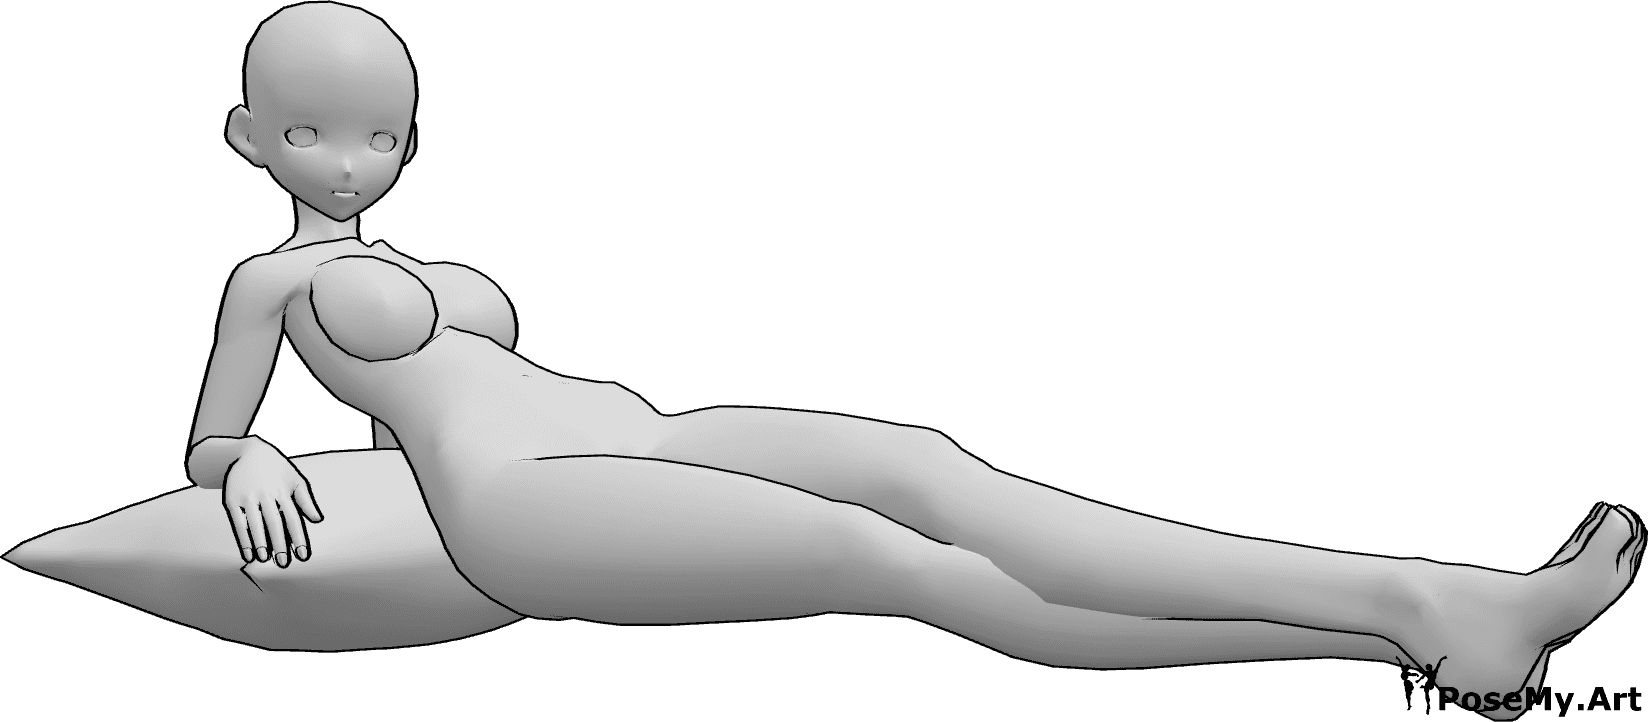 Riferimento alle pose- Anime femmina in posa distesa - Anime femminili sono sdraiate e guardano a destra, appoggiate a un cuscino.